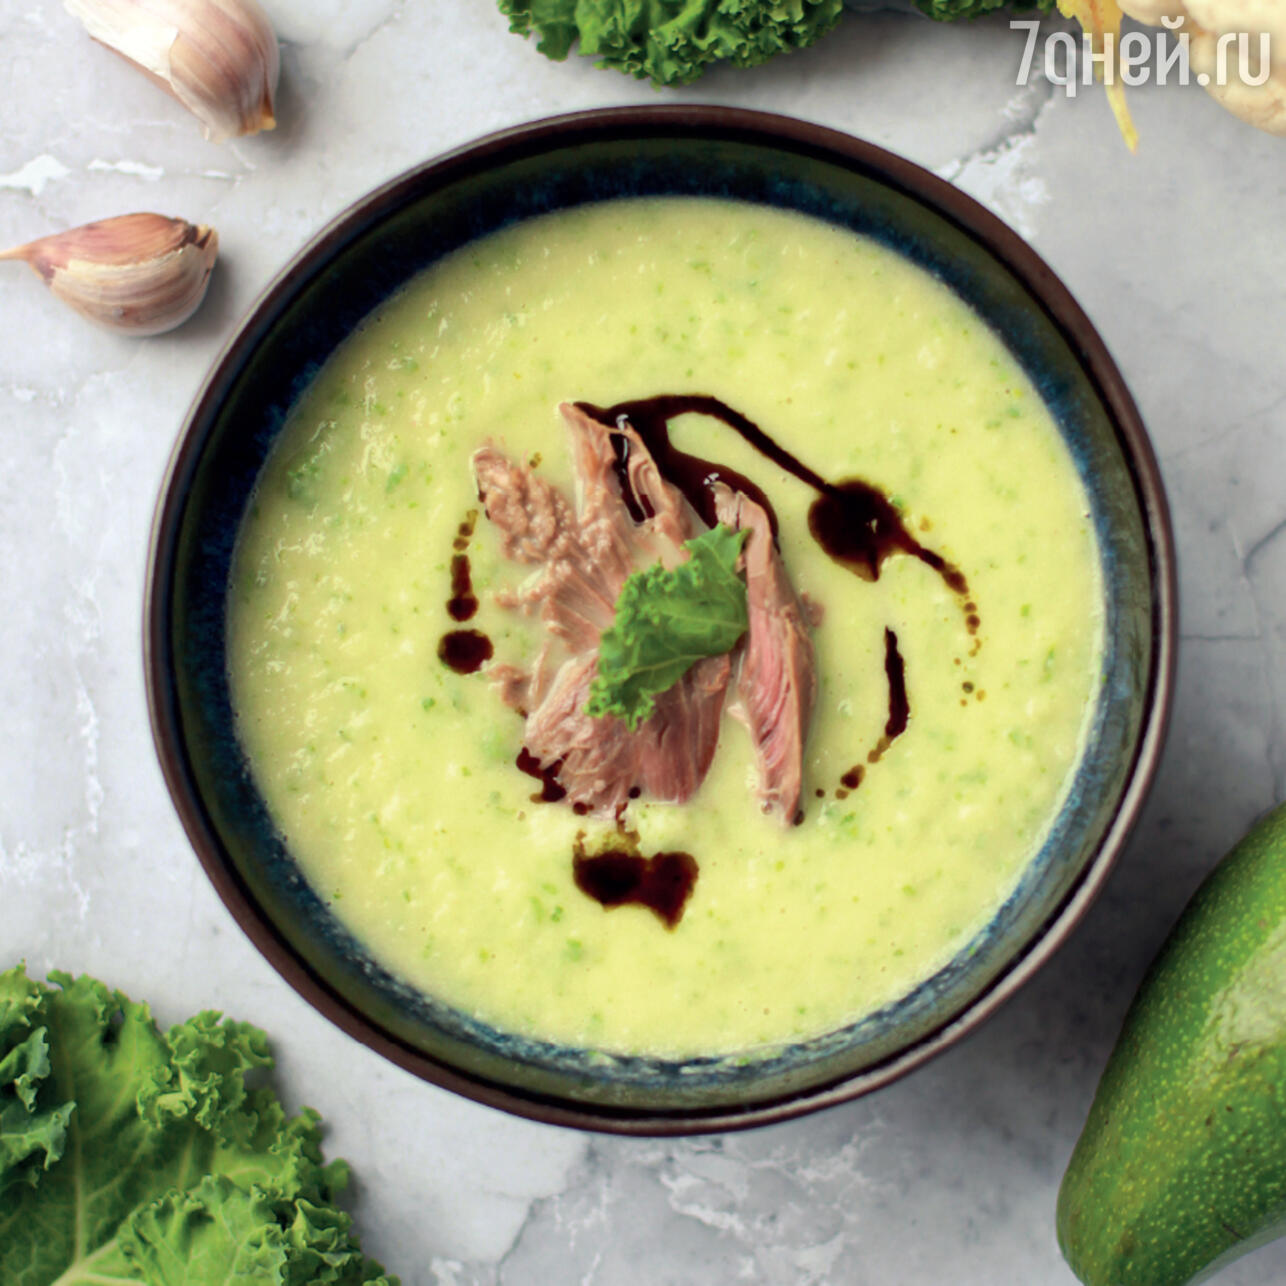 Готовим с настроением: 15 рецептов ярких супов-пюре